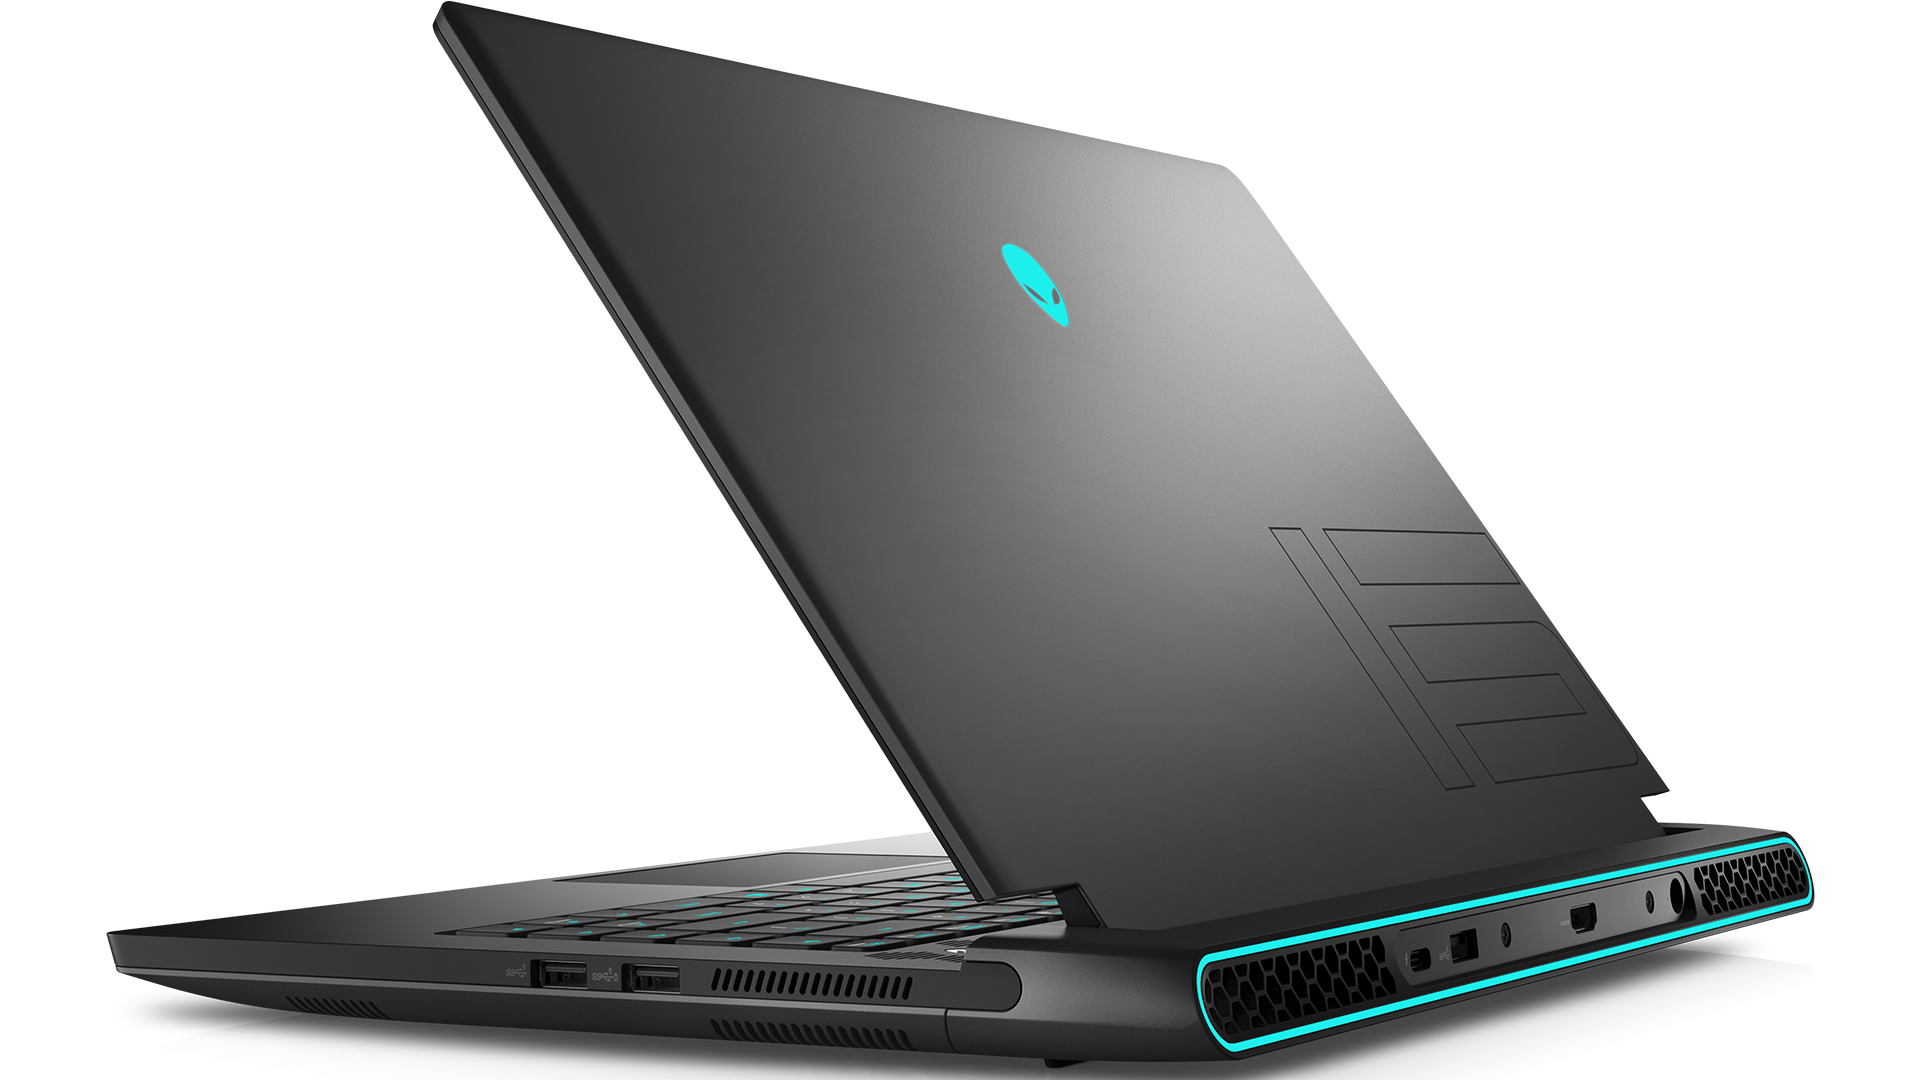 The Alienware m15 R7 laptop.